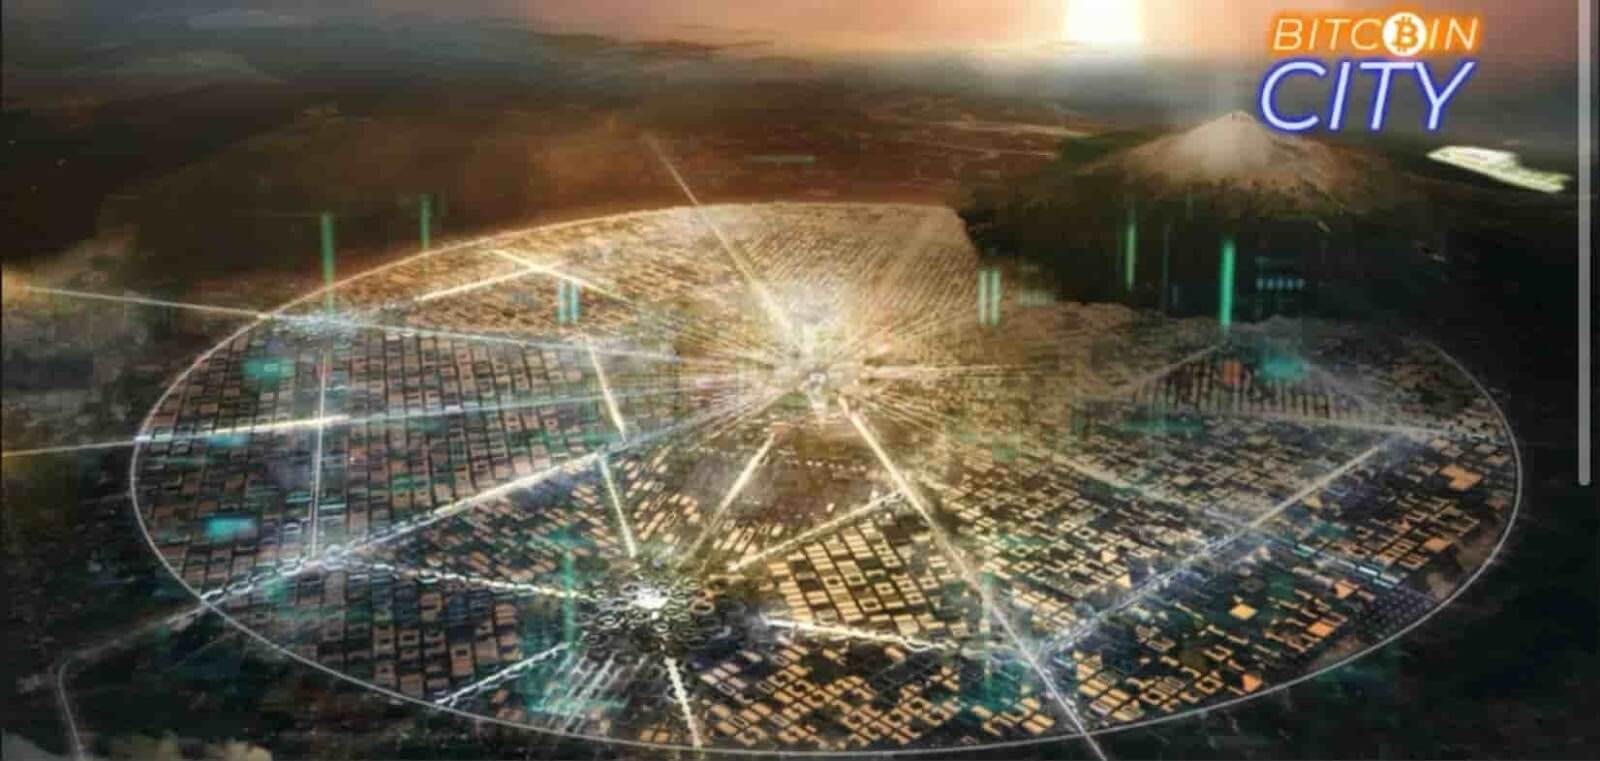 Imagem de como seria a cidade Bitcoin em El Salvador